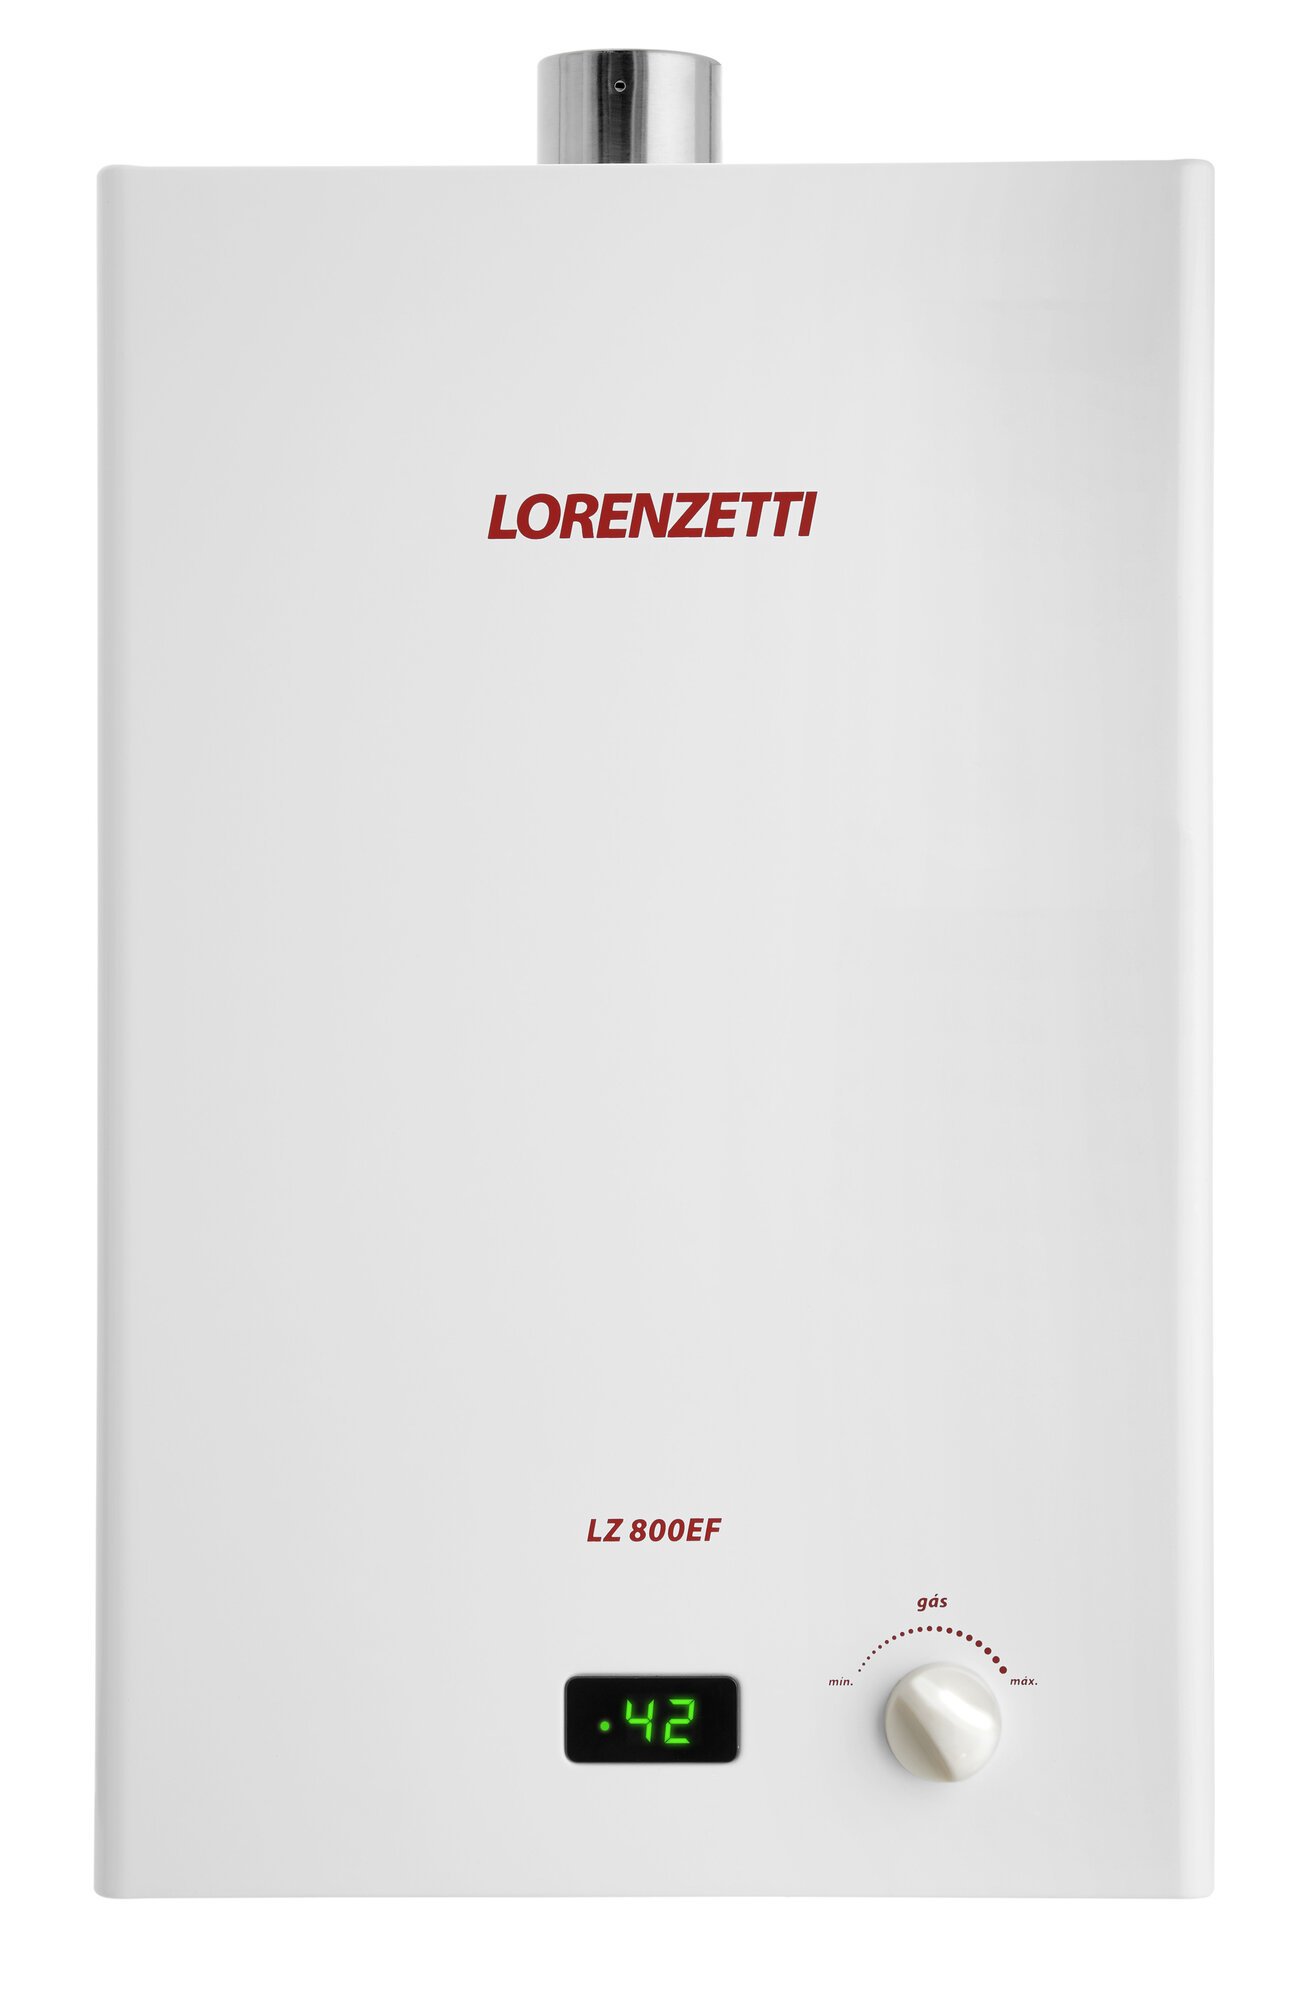 Aquecedor de Água Lorenzetti LZ 800EF Modelo Novo Vazão 8 Litros Exaustão Forçada - Gás - 1